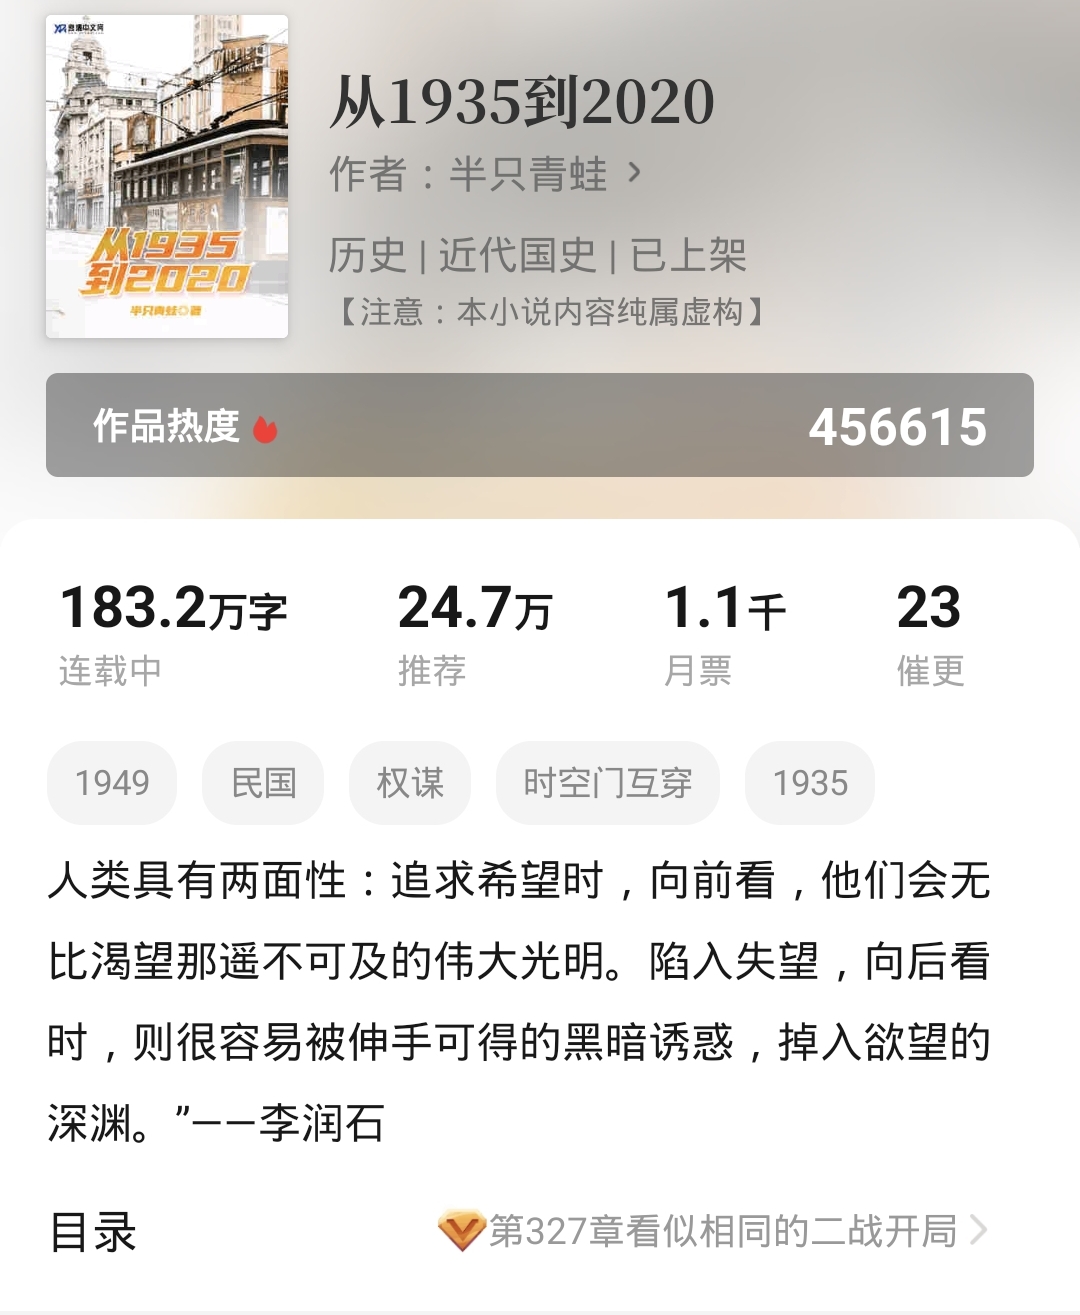 息壤中文网闷声发展,头部小说试读《从1935到2020》